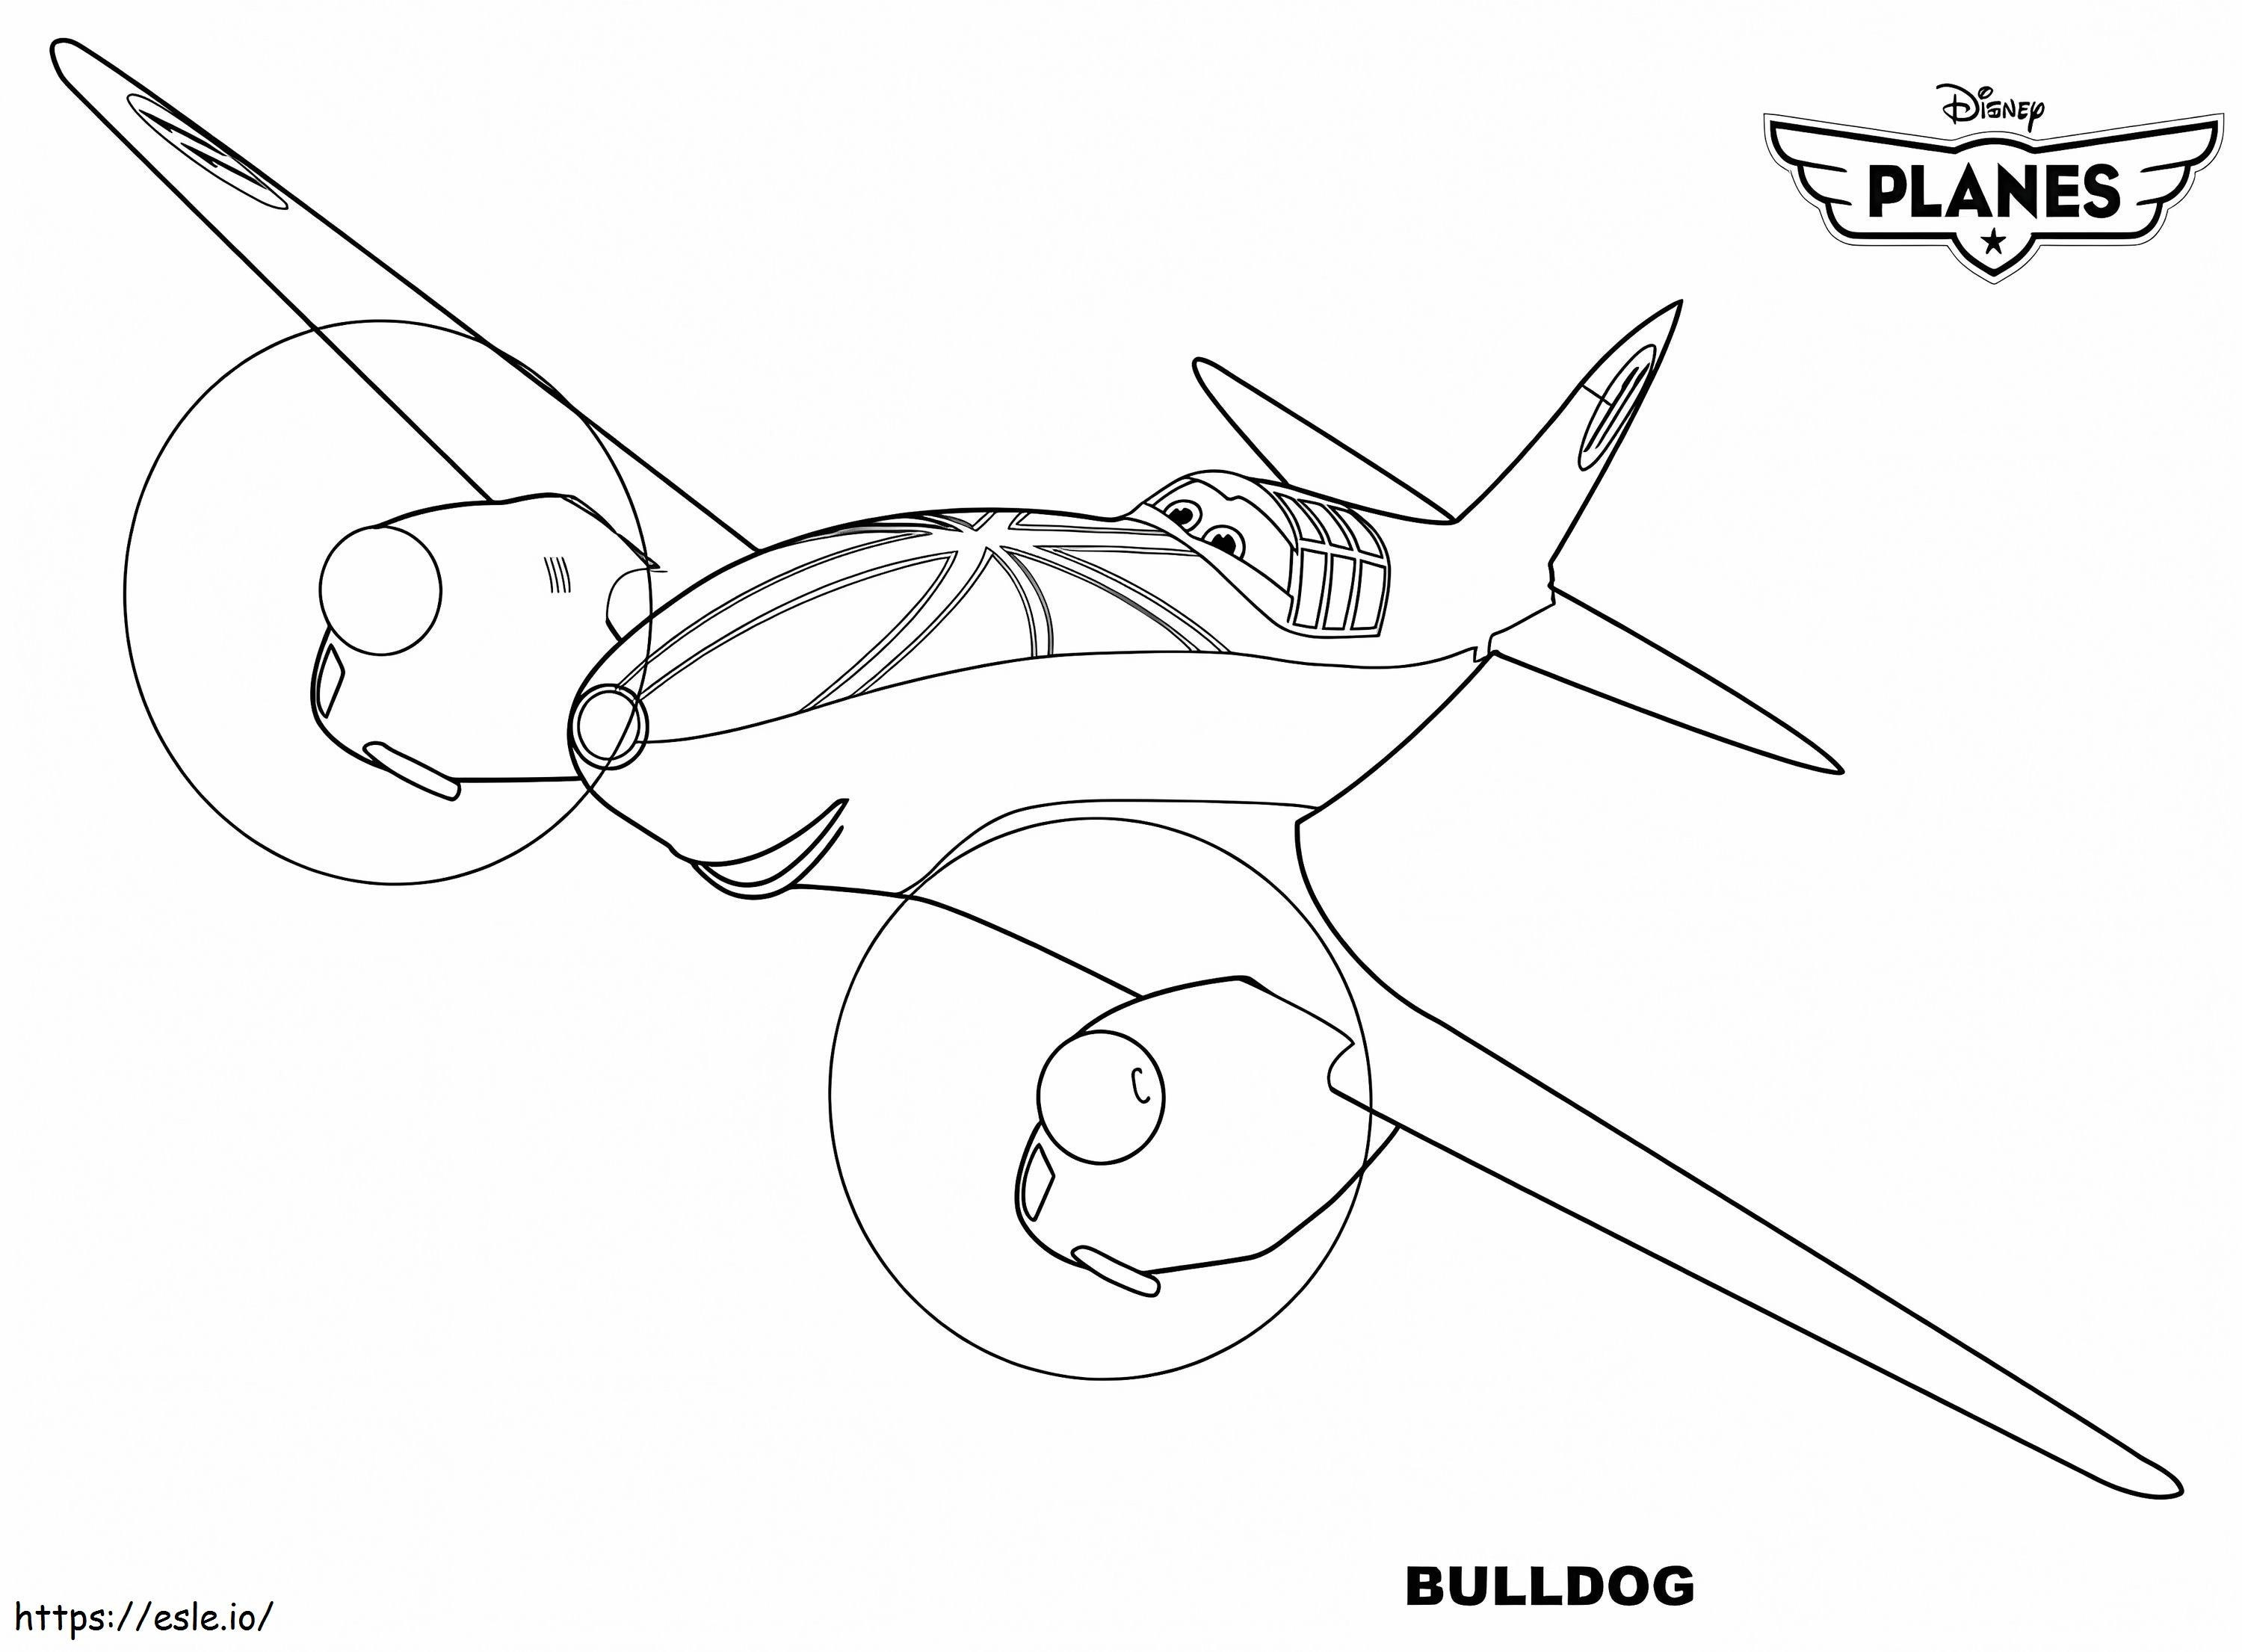 Pesawat Bulldog Gambar Mewarnai